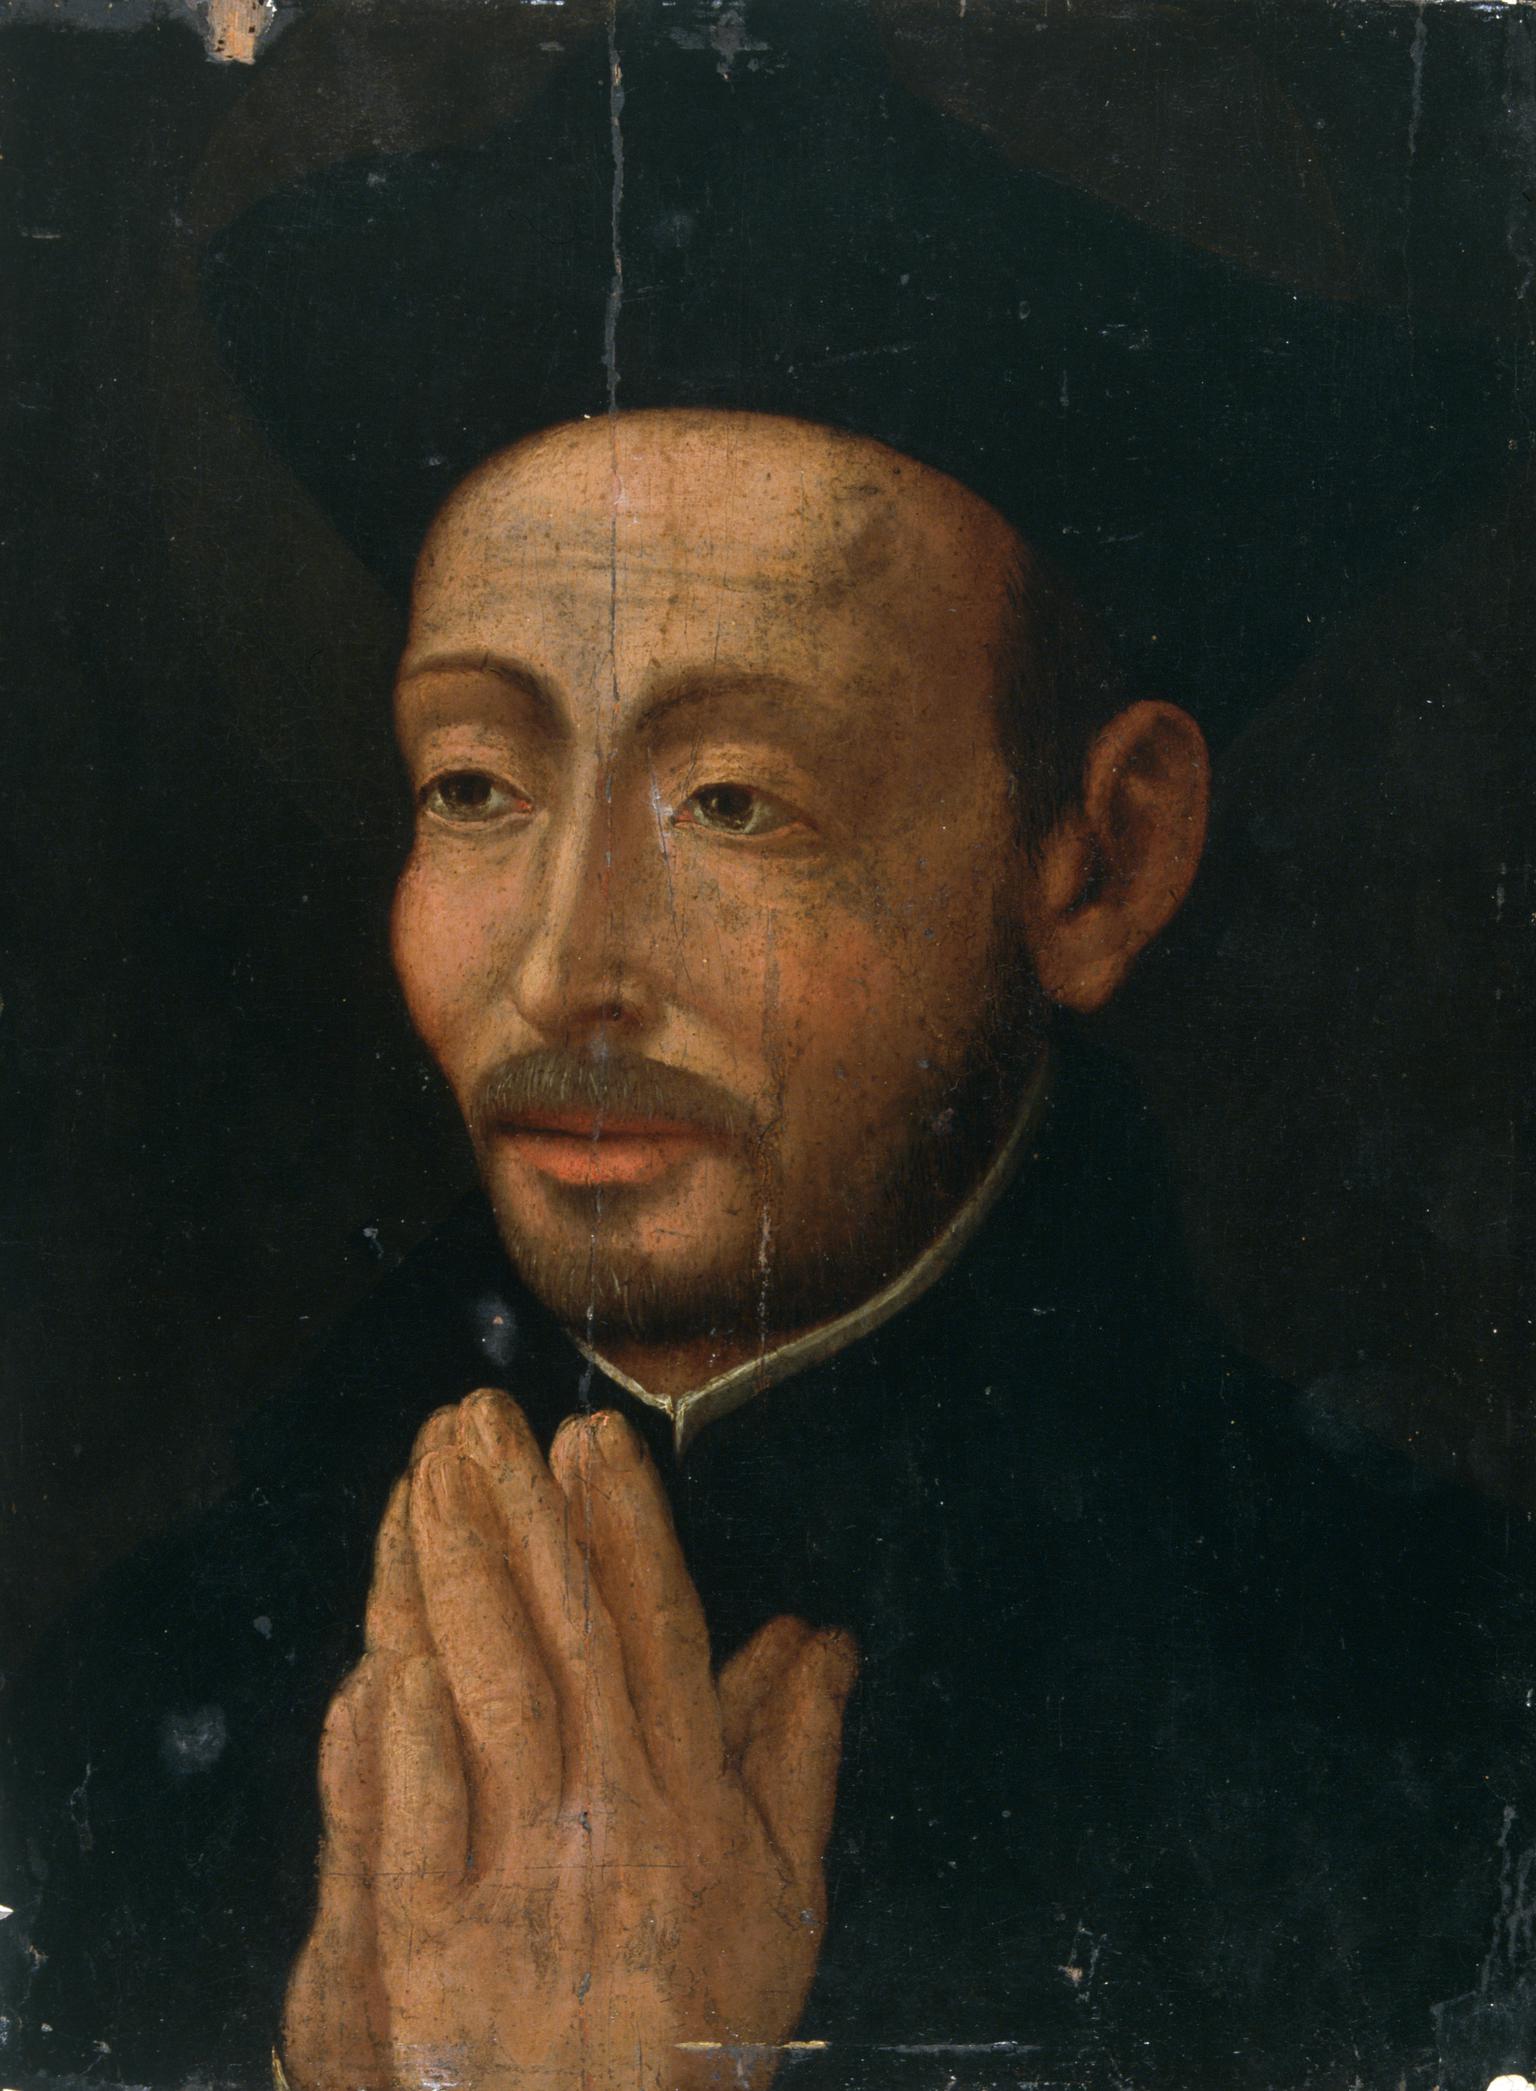 Saint Ignatius of Loyola (1491–1556)